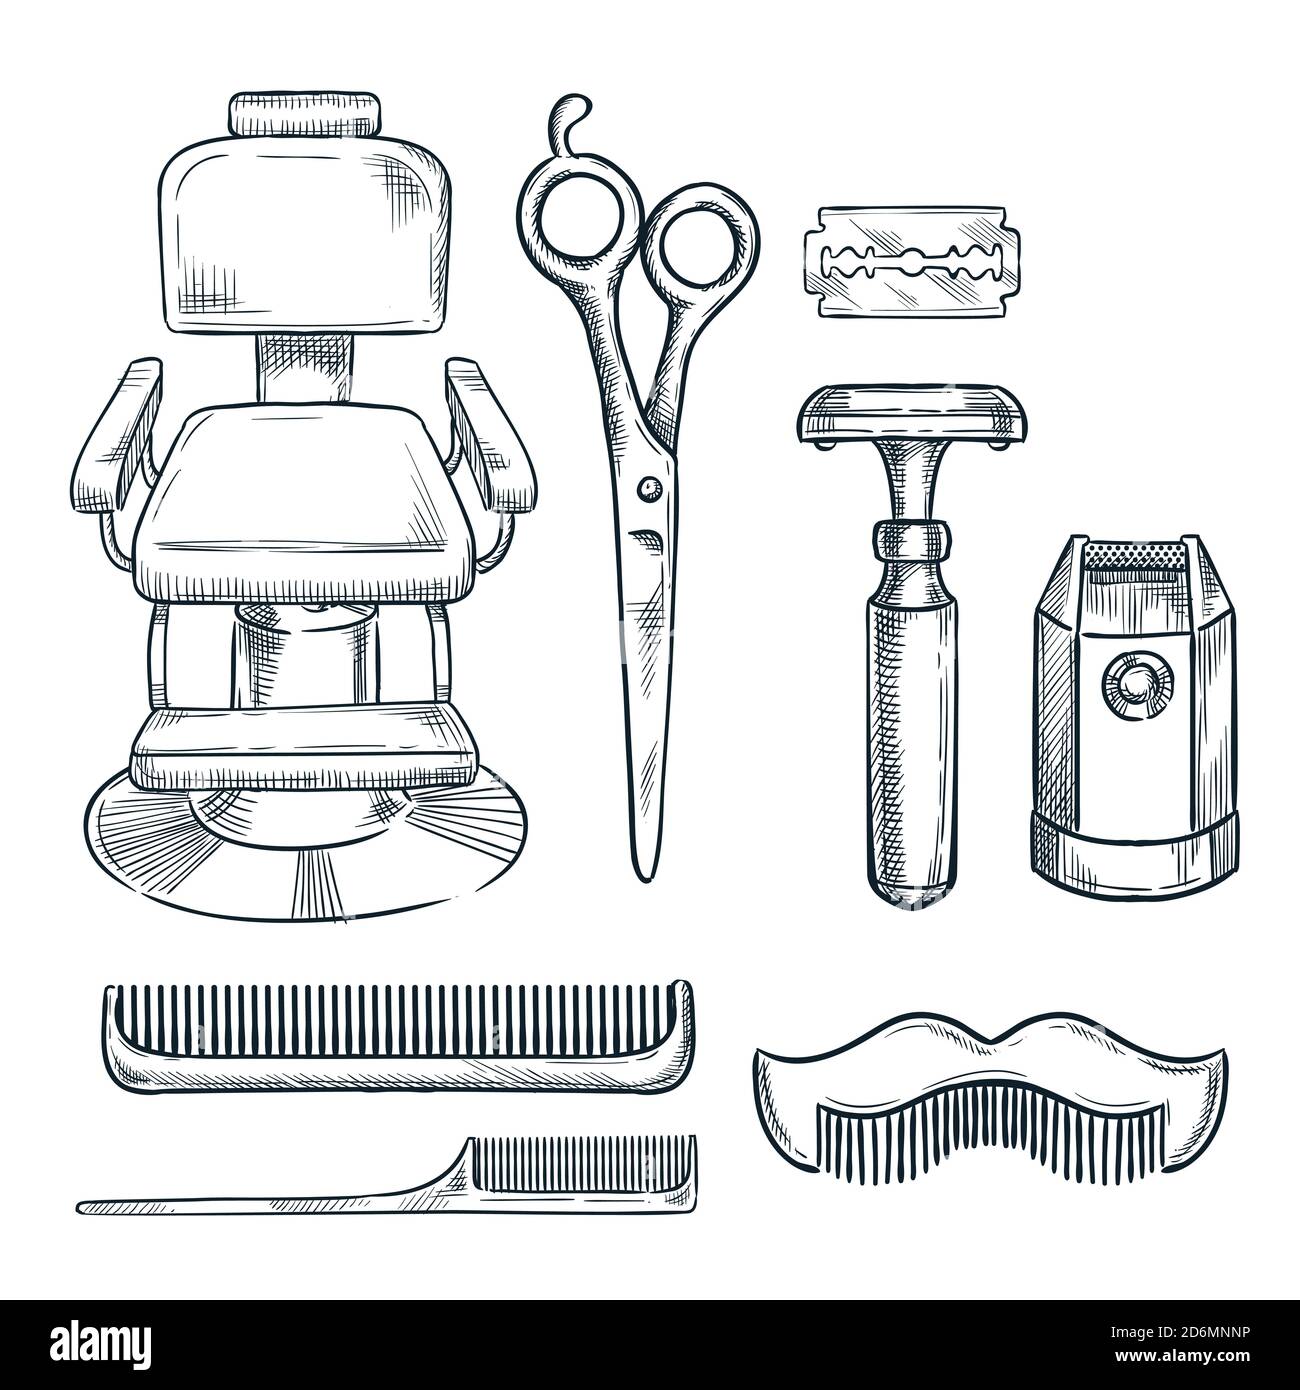 Barber tools vector illustration Banque d'images vectorielles - Alamy